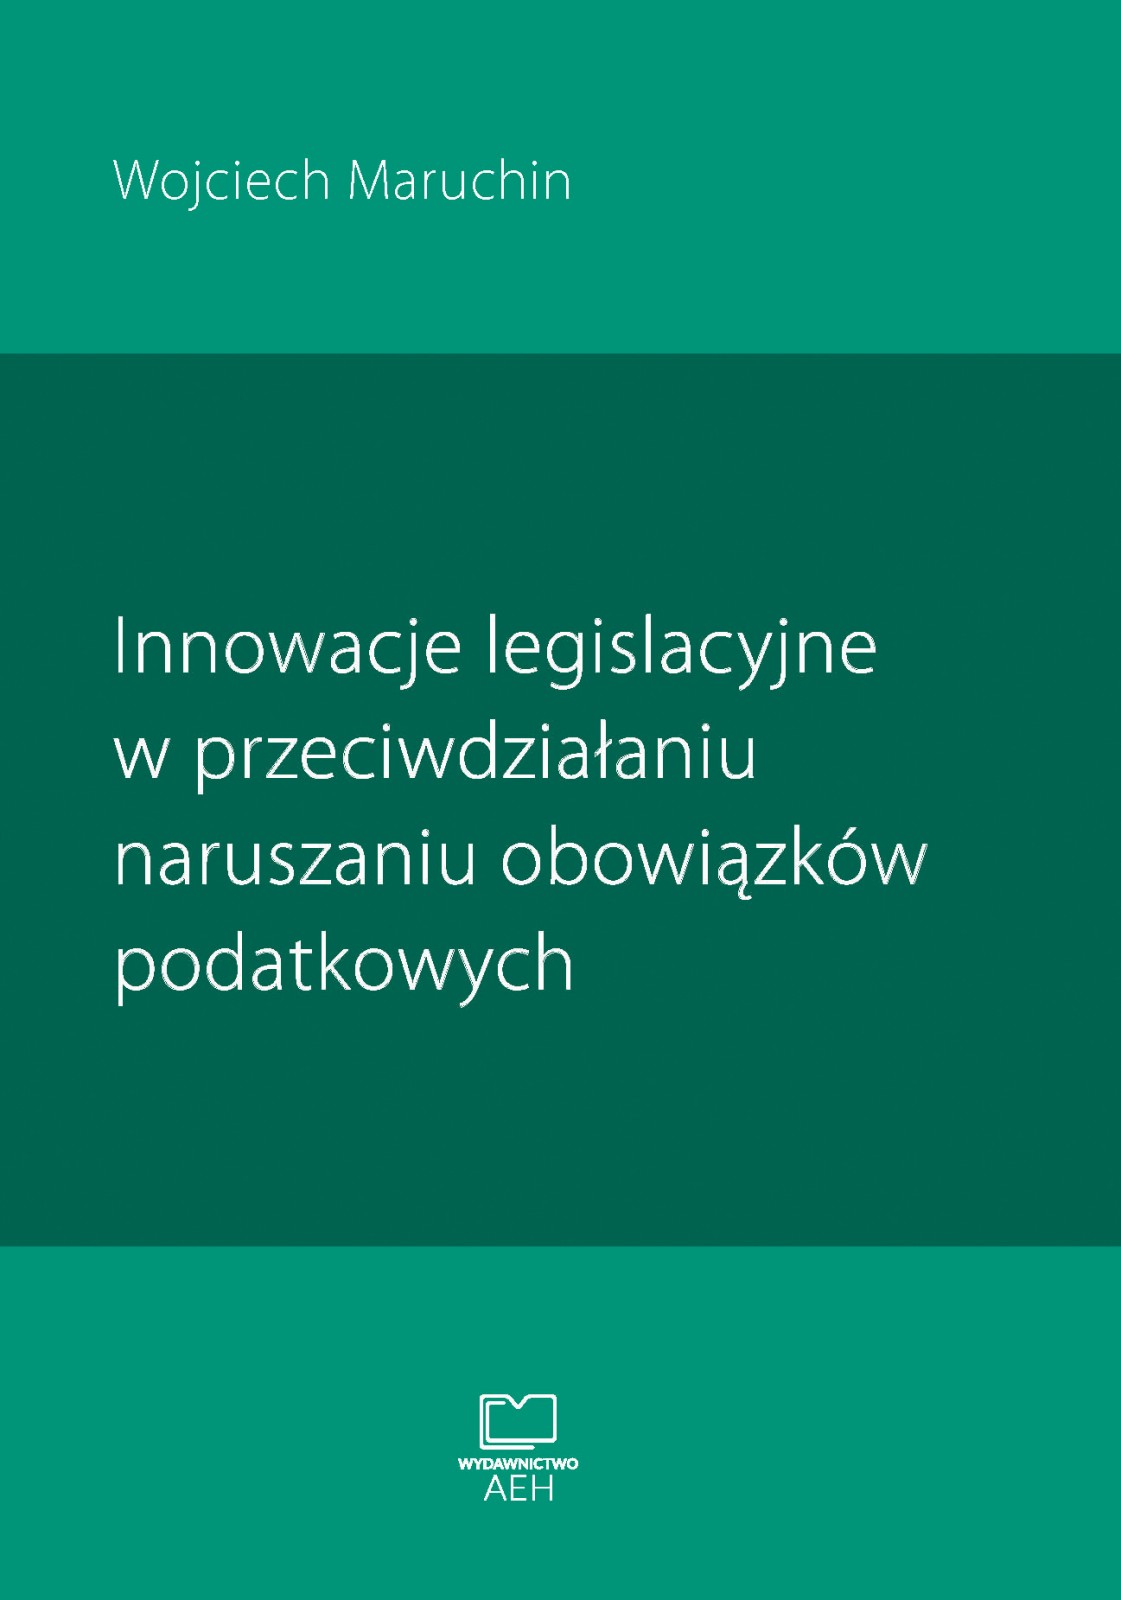 Innowacje legislacyjne w przeciwdzialaniu naruszaniu obowiazkow podatkowych - Wojciech Maruchin